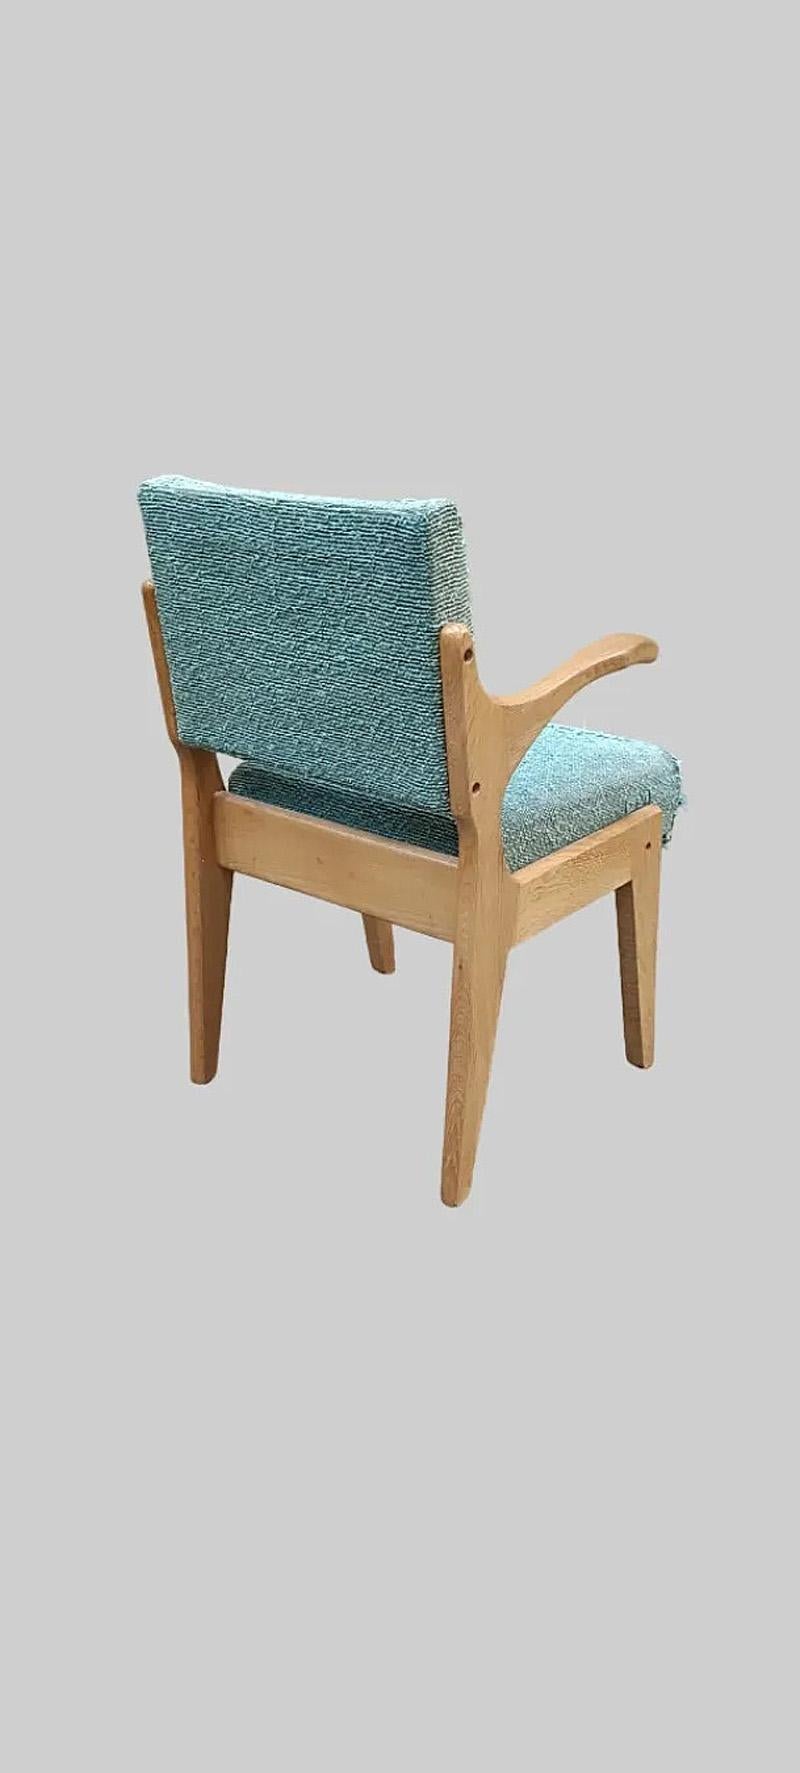 Guillerme et Chambron, fauteuil en chêne de 1960 édité par Votre Maison.
modele 